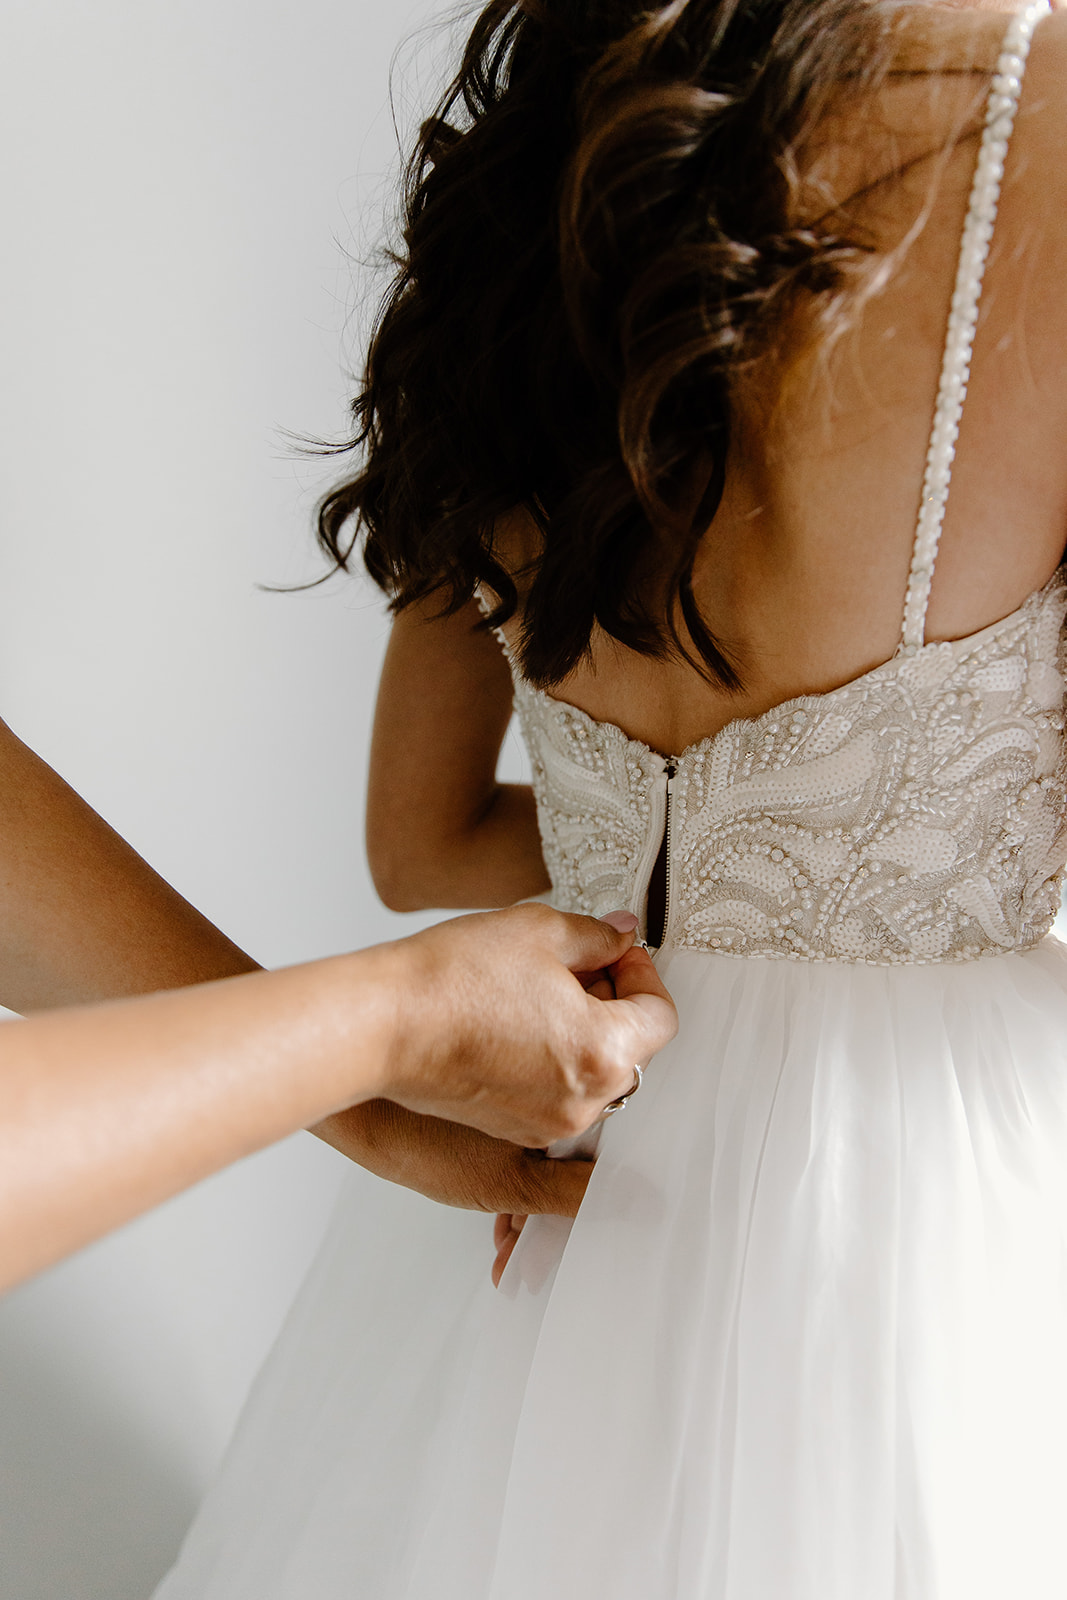 A mother's hands zip her daughter's wedding dress